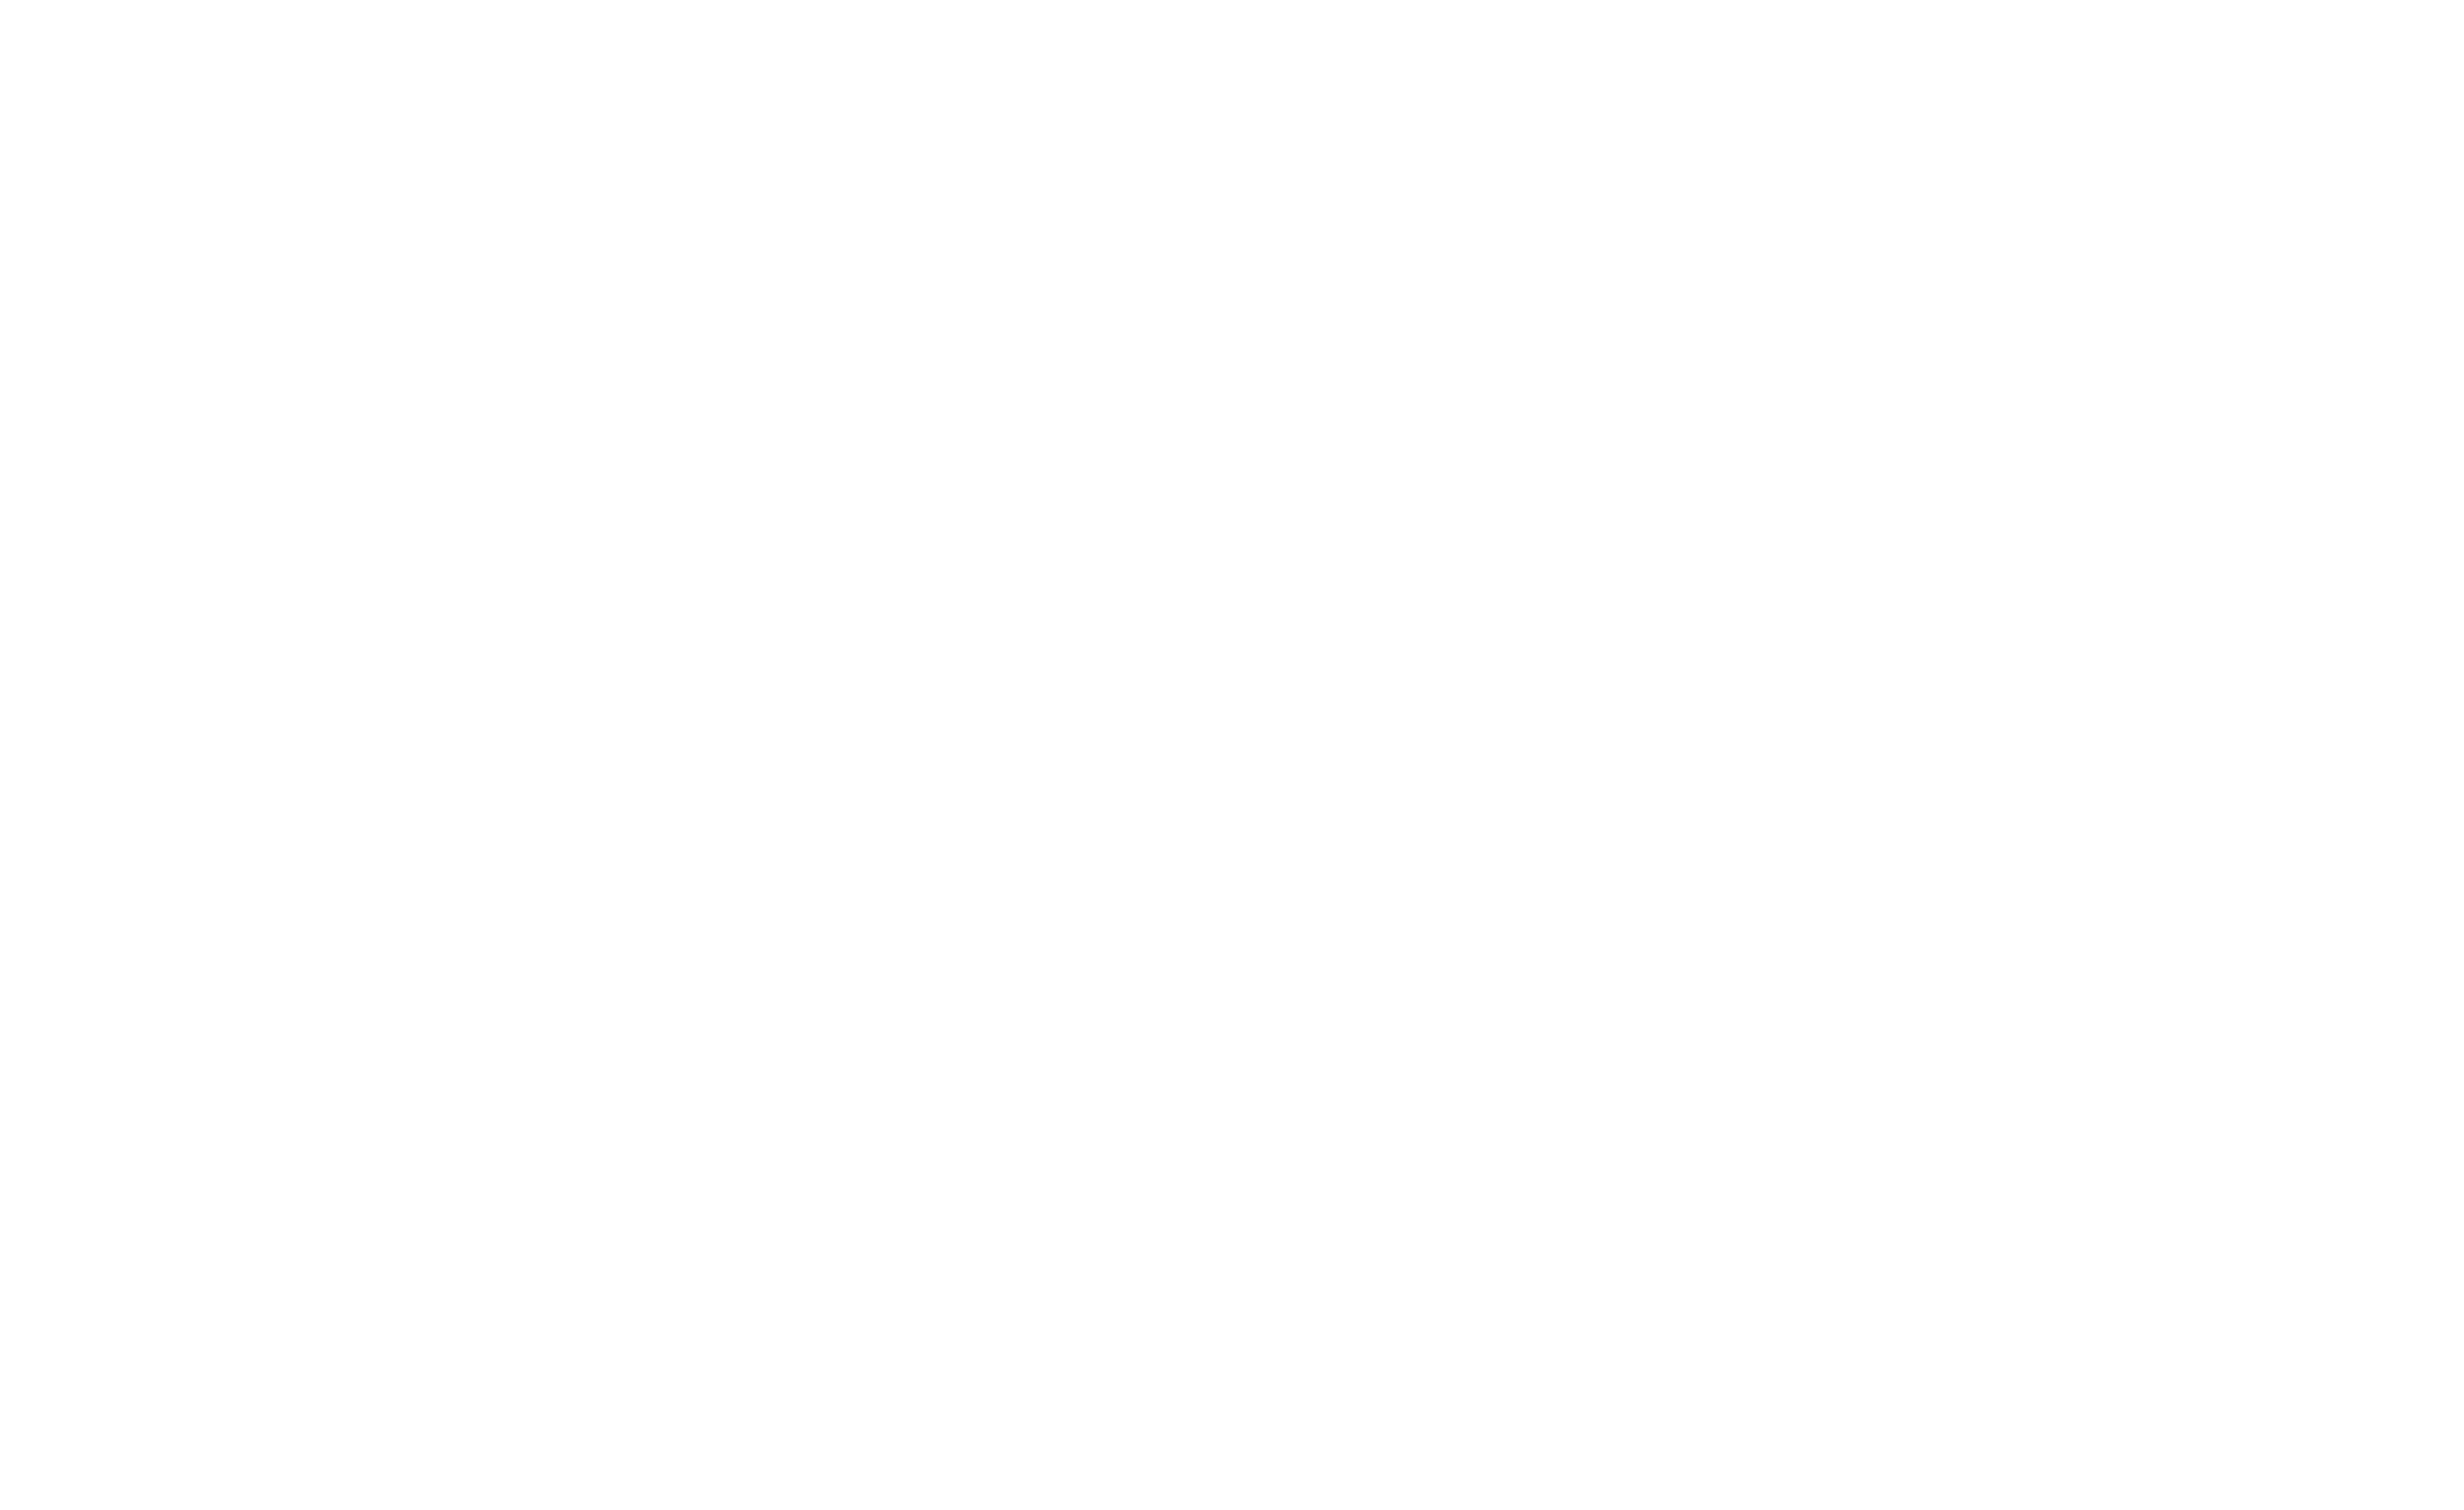 嶋田運送株式会社 Welcome to Our Corporate Site